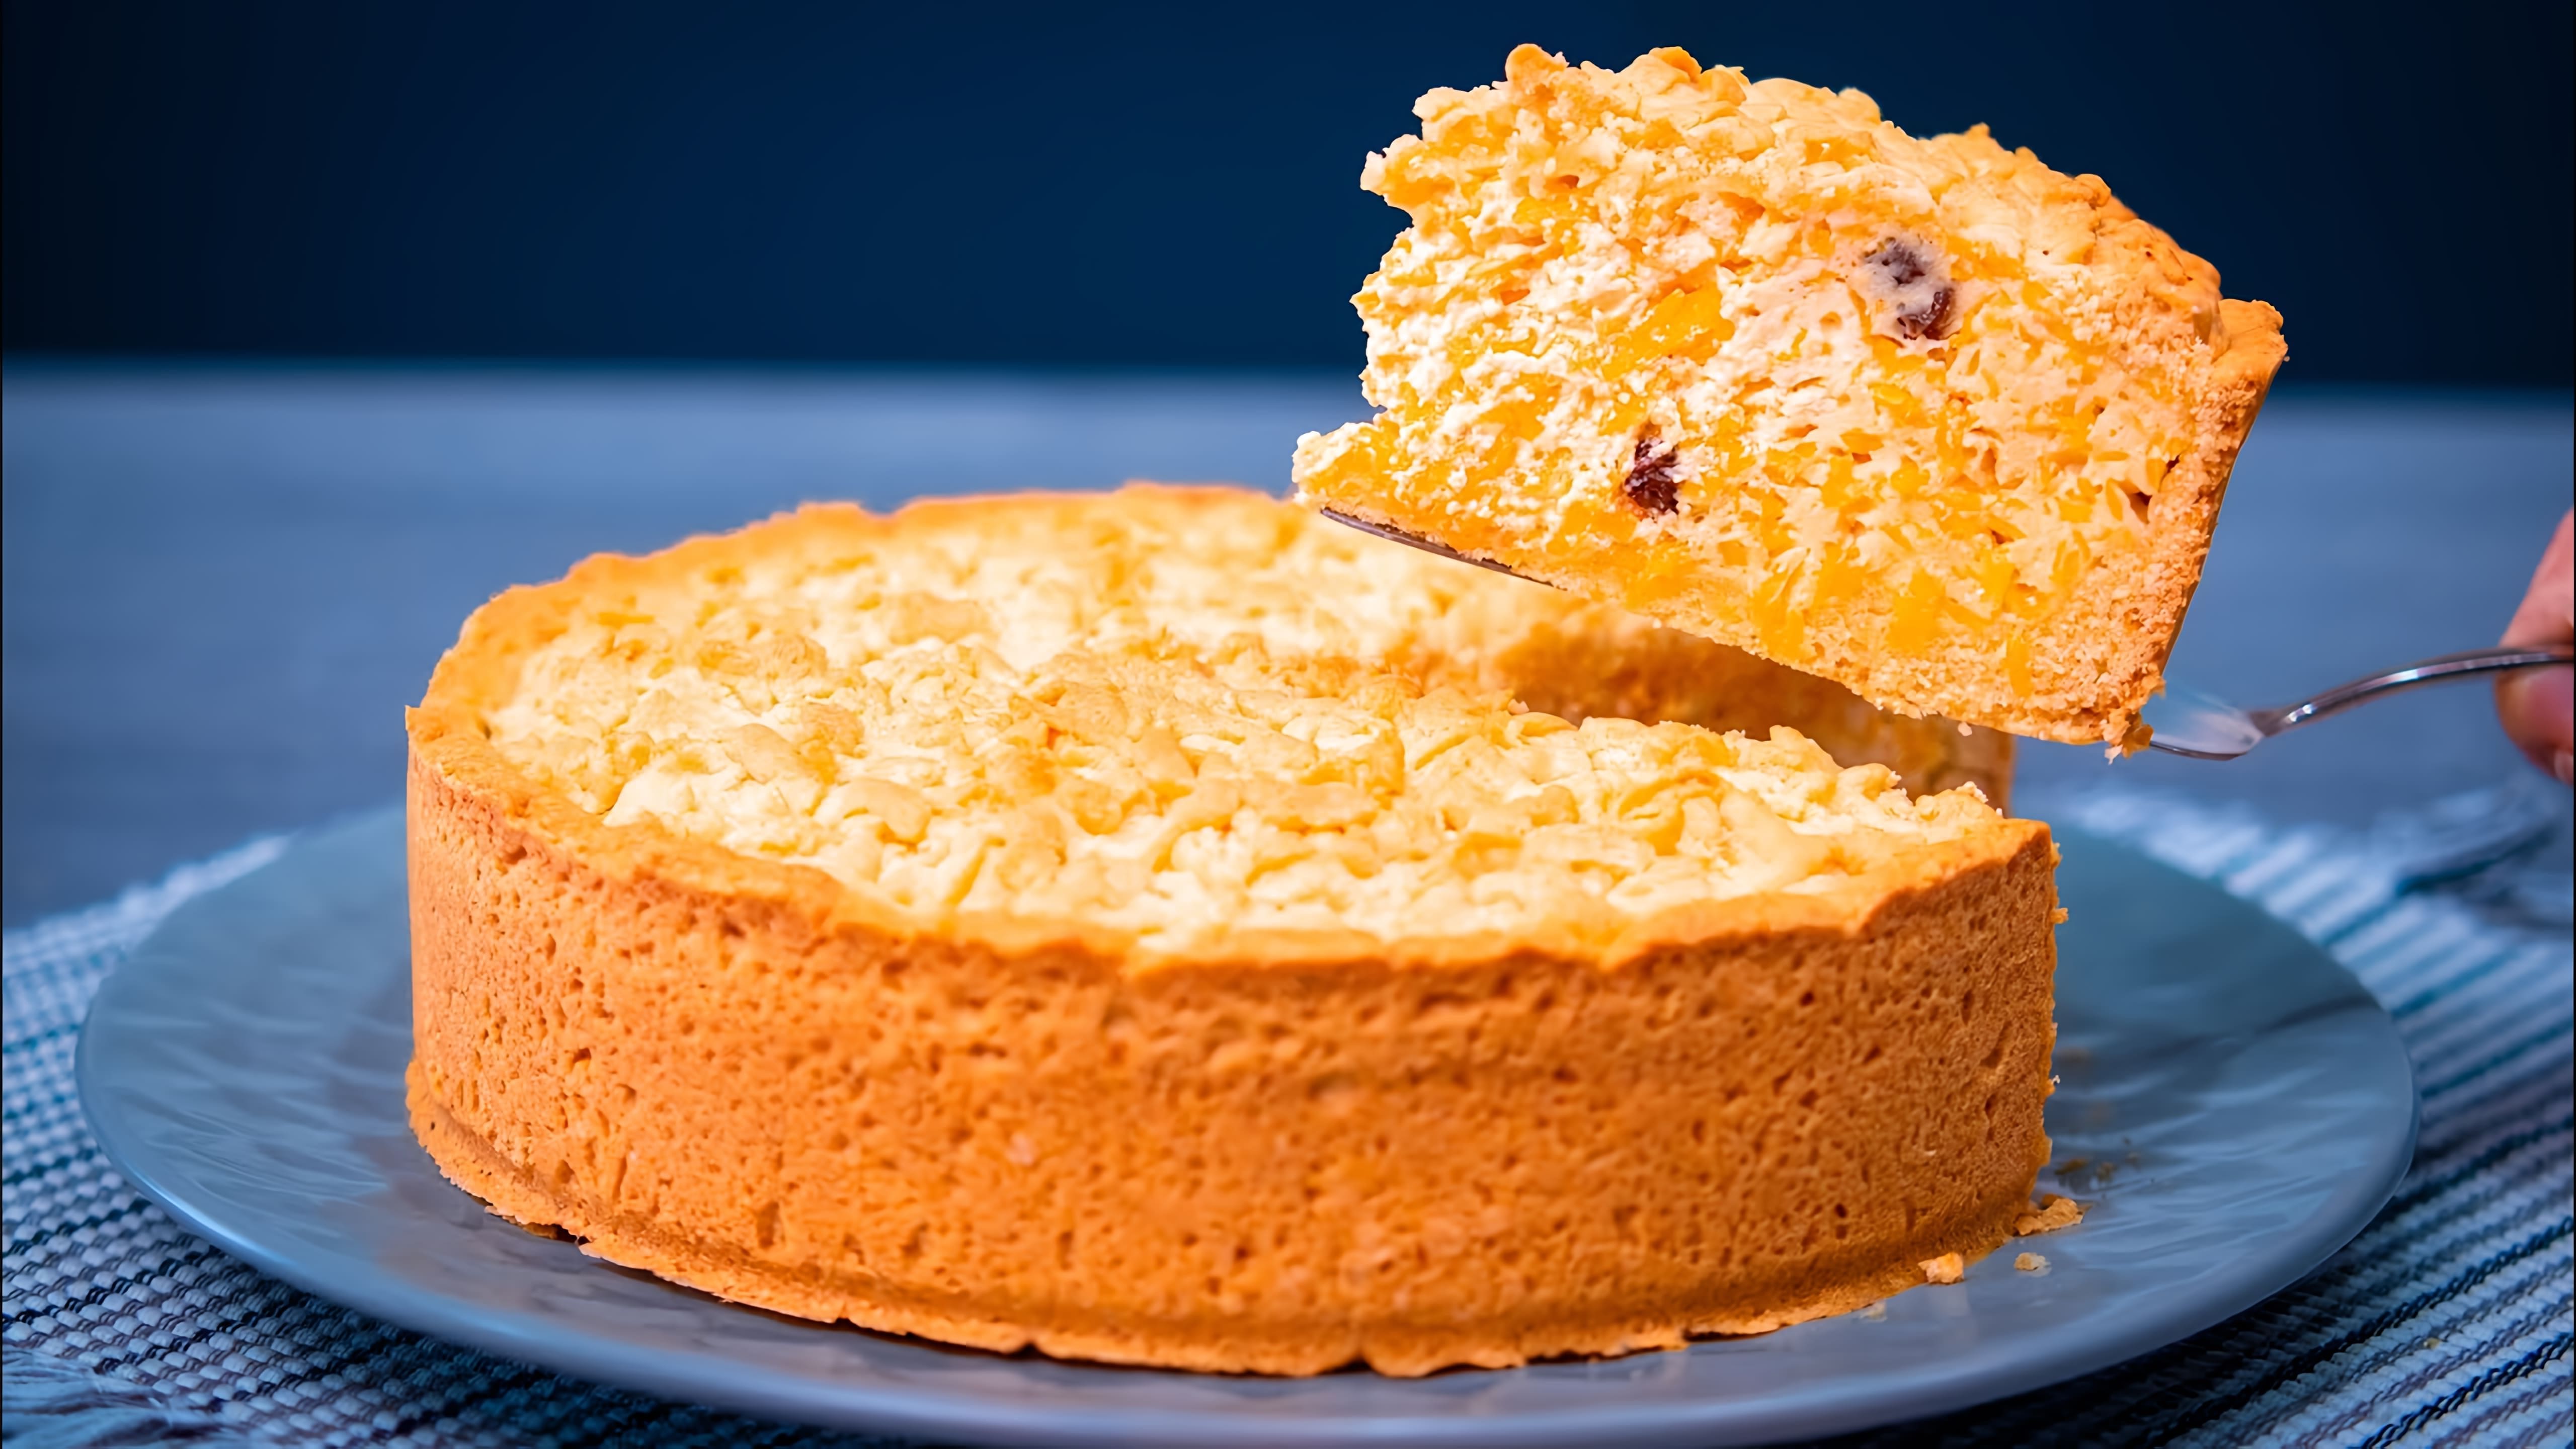 В этом видео демонстрируется рецепт тыквенного пирога, который готовится очень легко и быстро